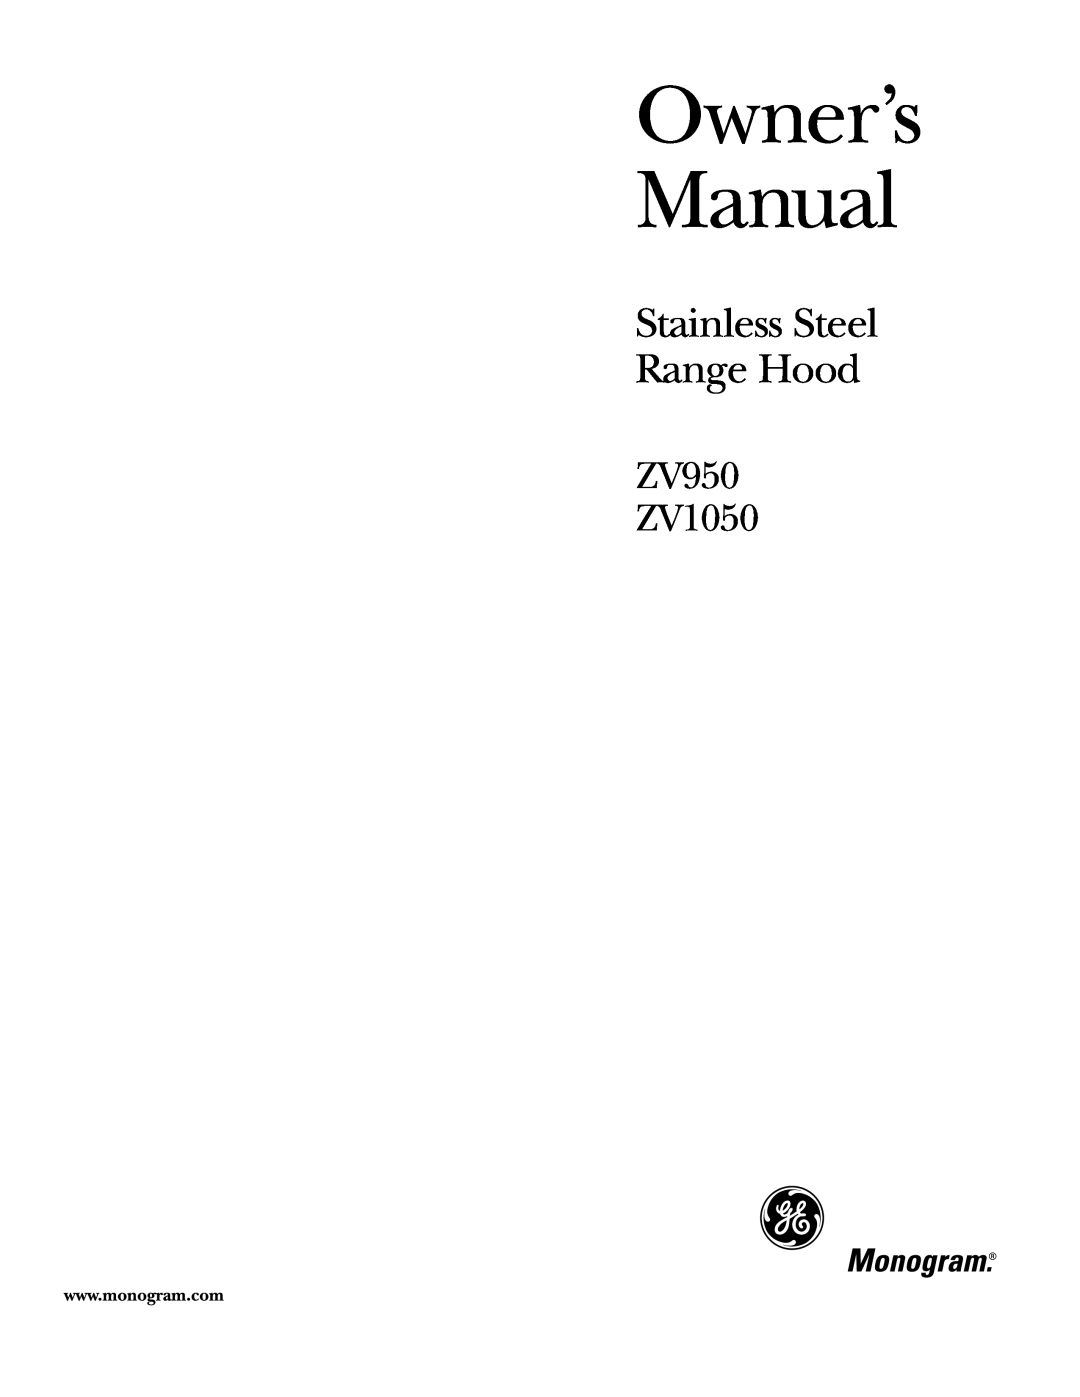 GE owner manual Stainless Steel Range Hood, ZV950 ZV1050 